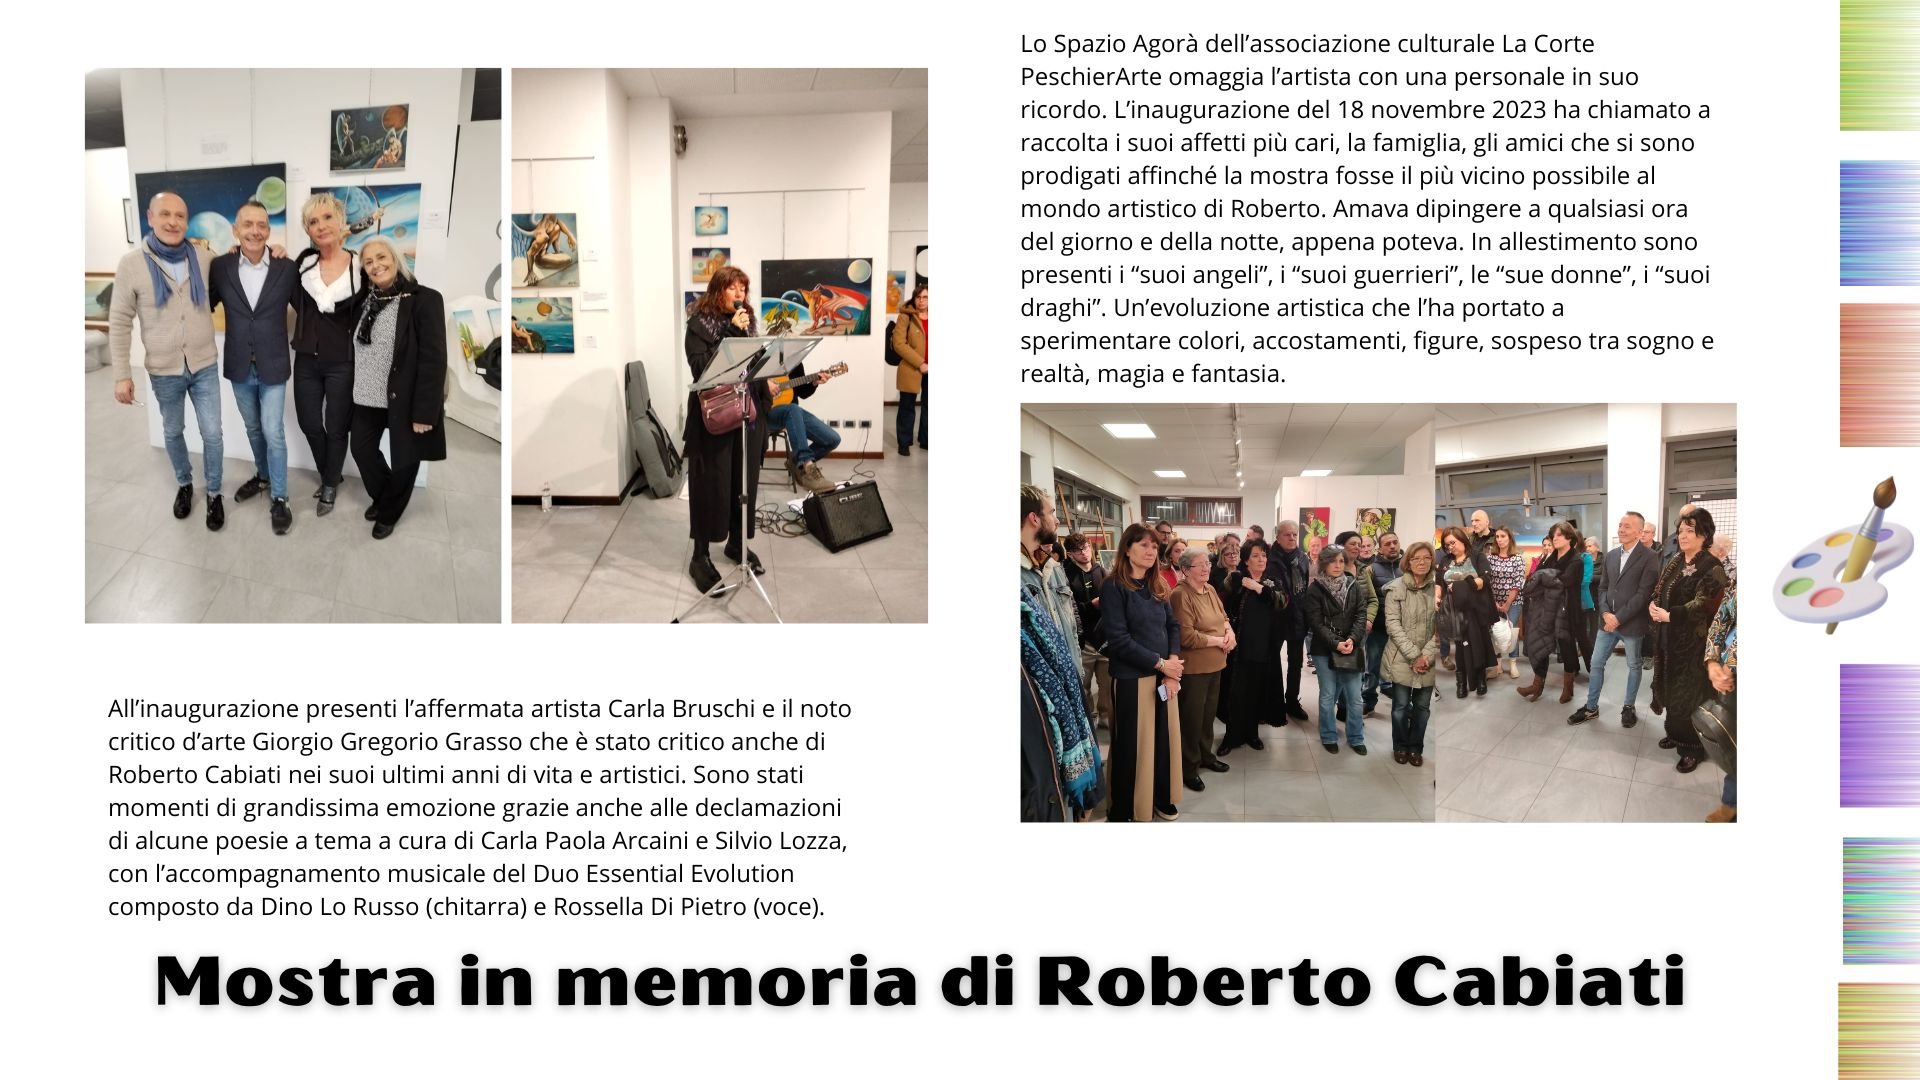 PeschierArte omaggia Roberto Cabiati